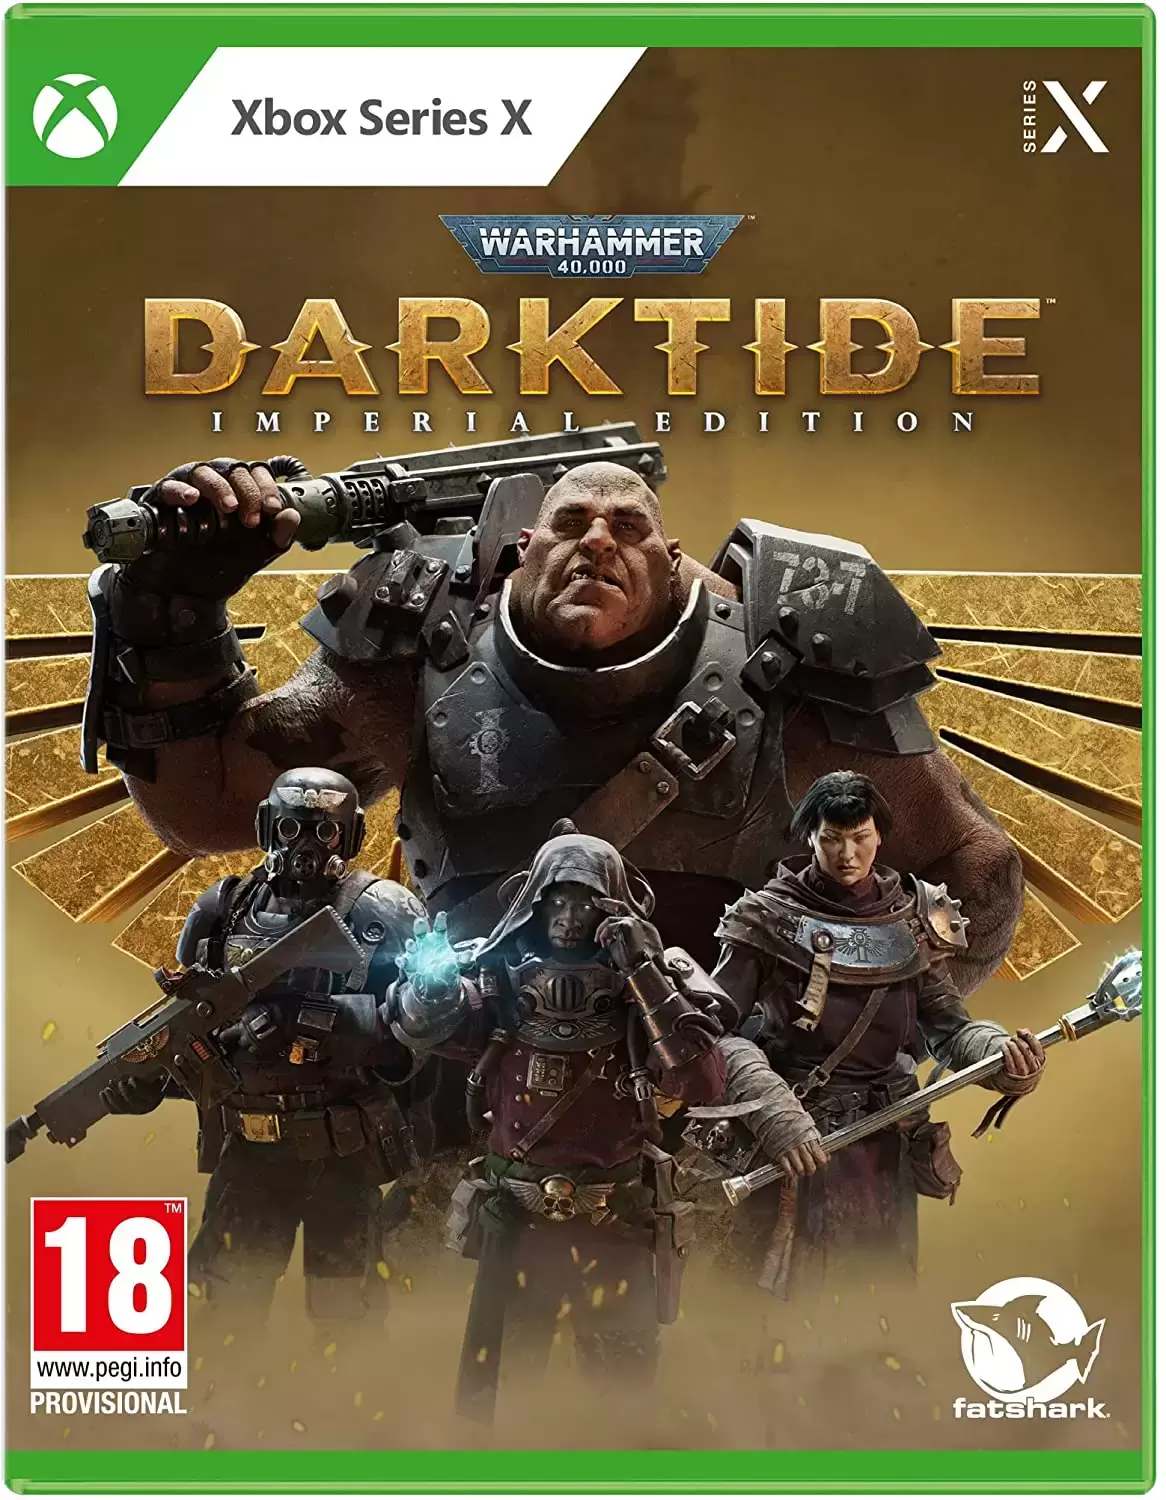 XBOX Series X Games - Warhammer 40.000 Darktide Imperial Edition